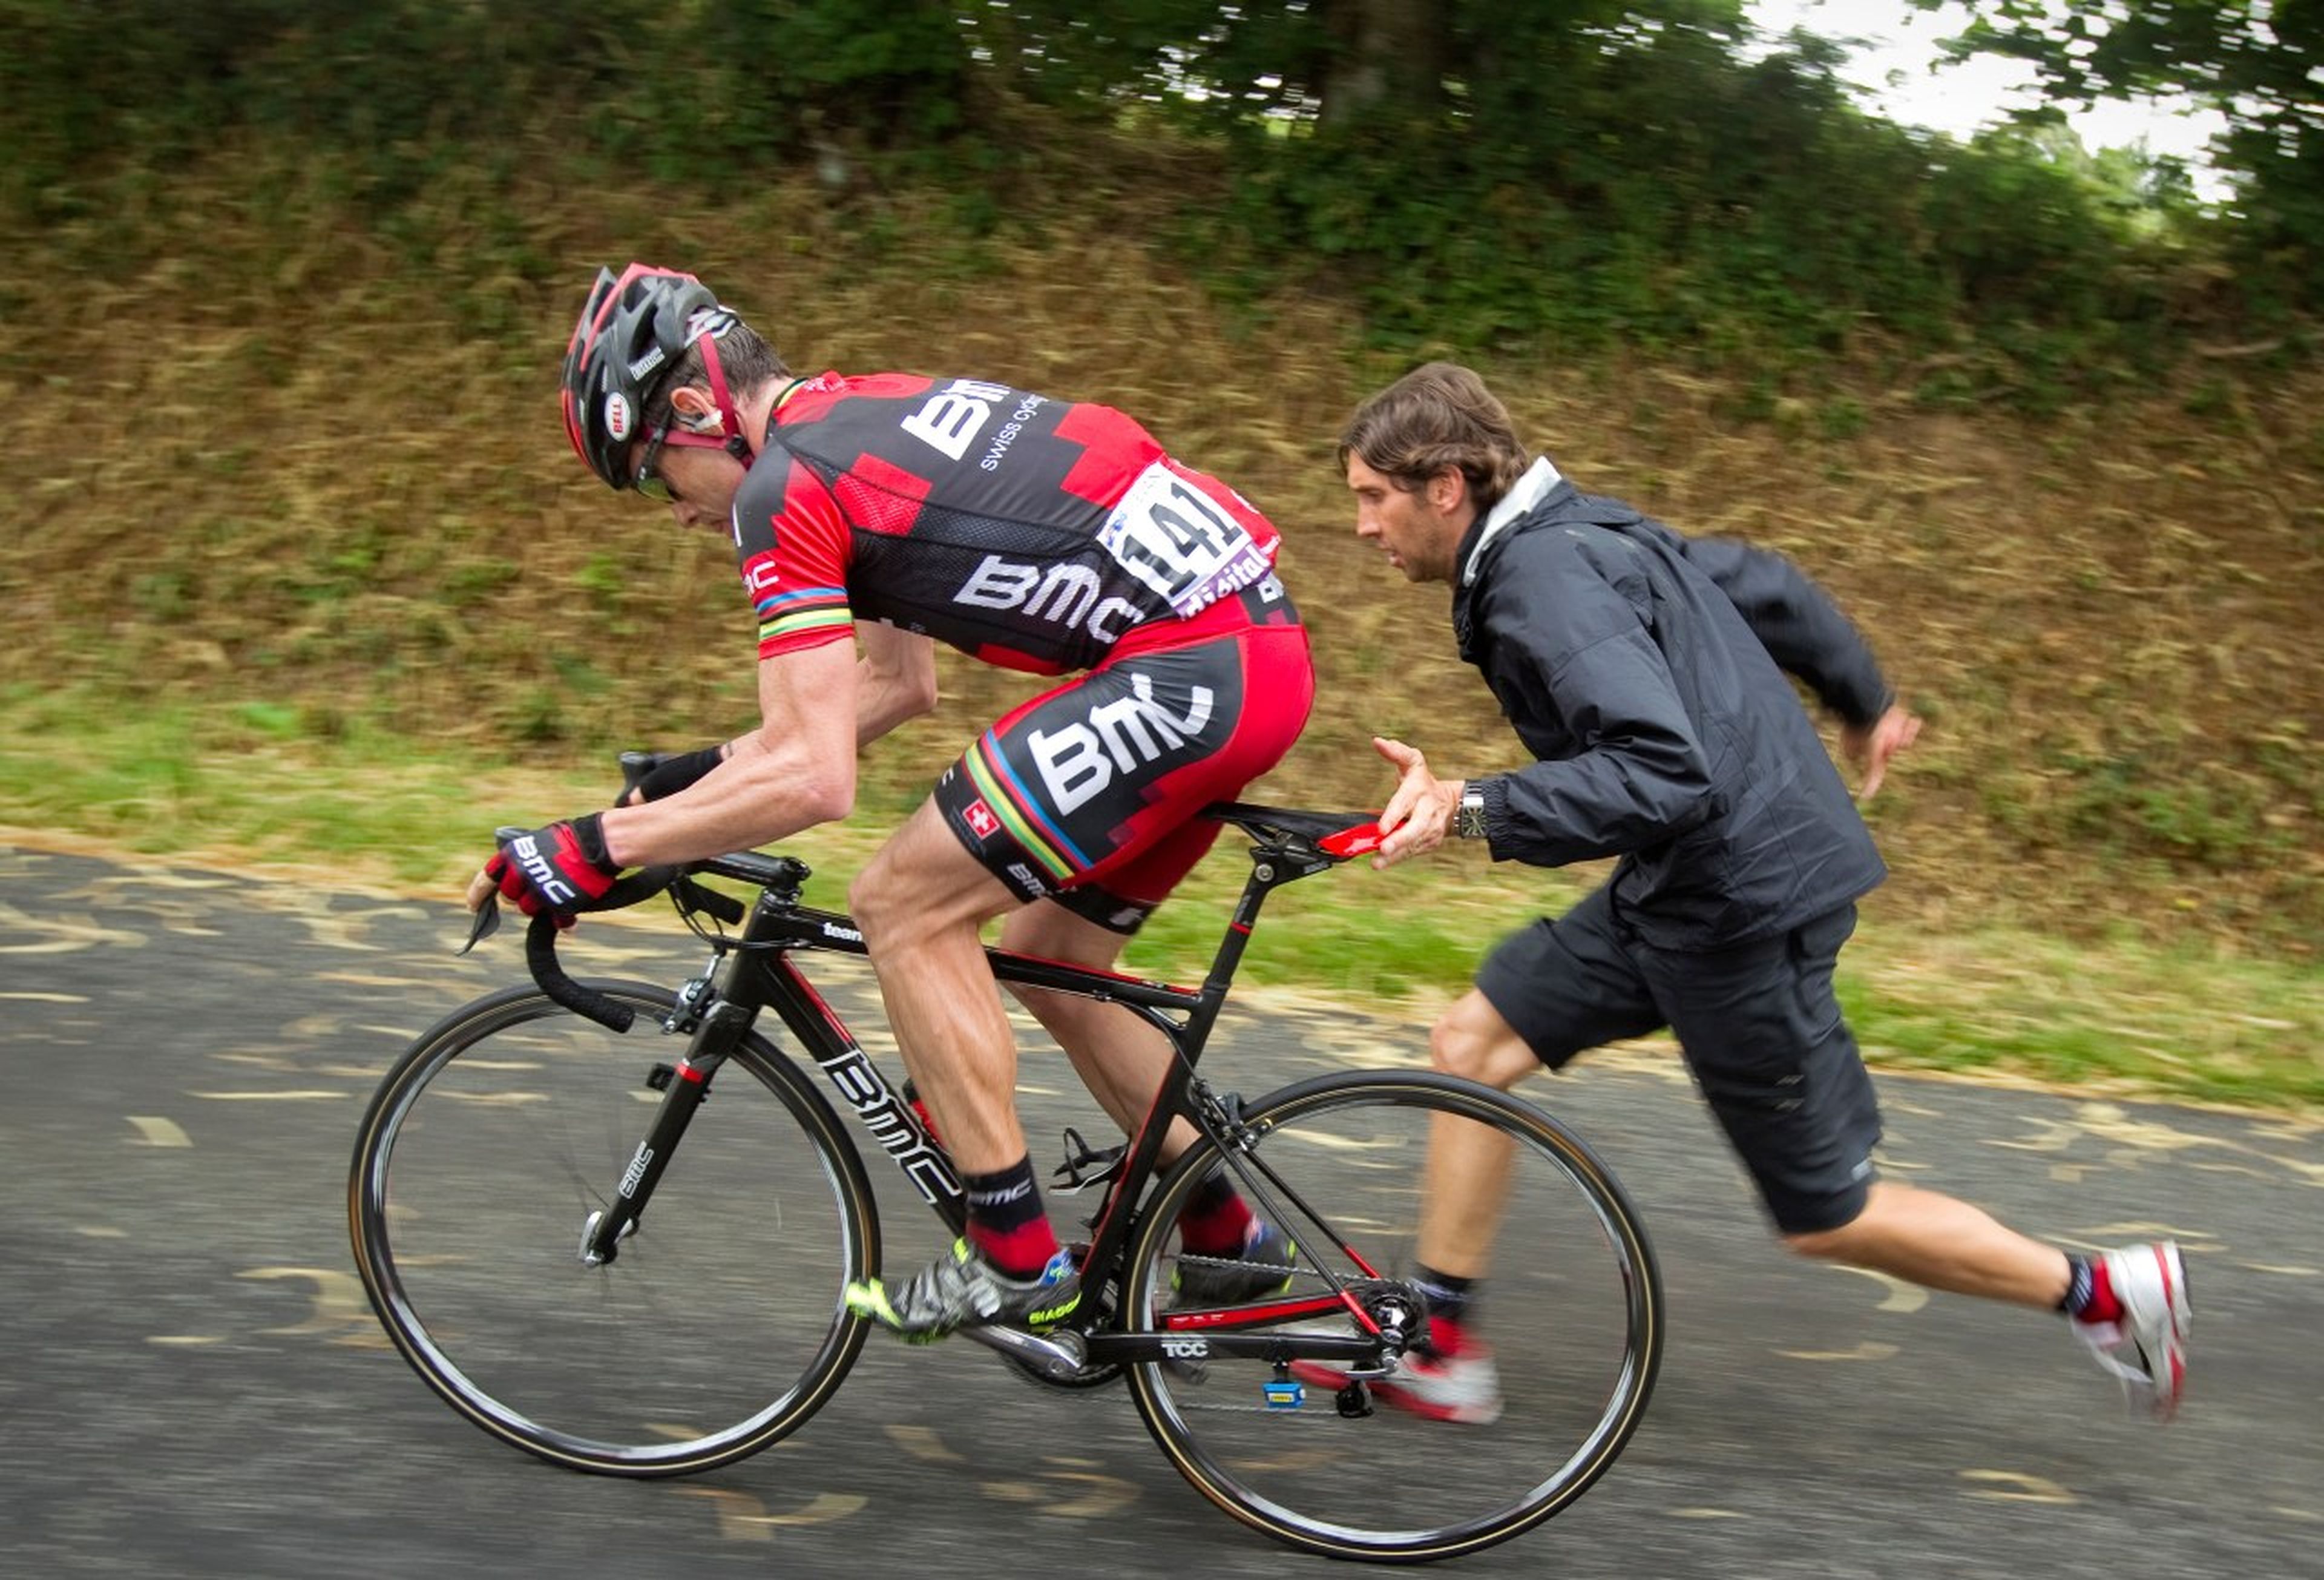 Un ciclista intenta recuperar velocidad con ayuda de un miembro de su equipo